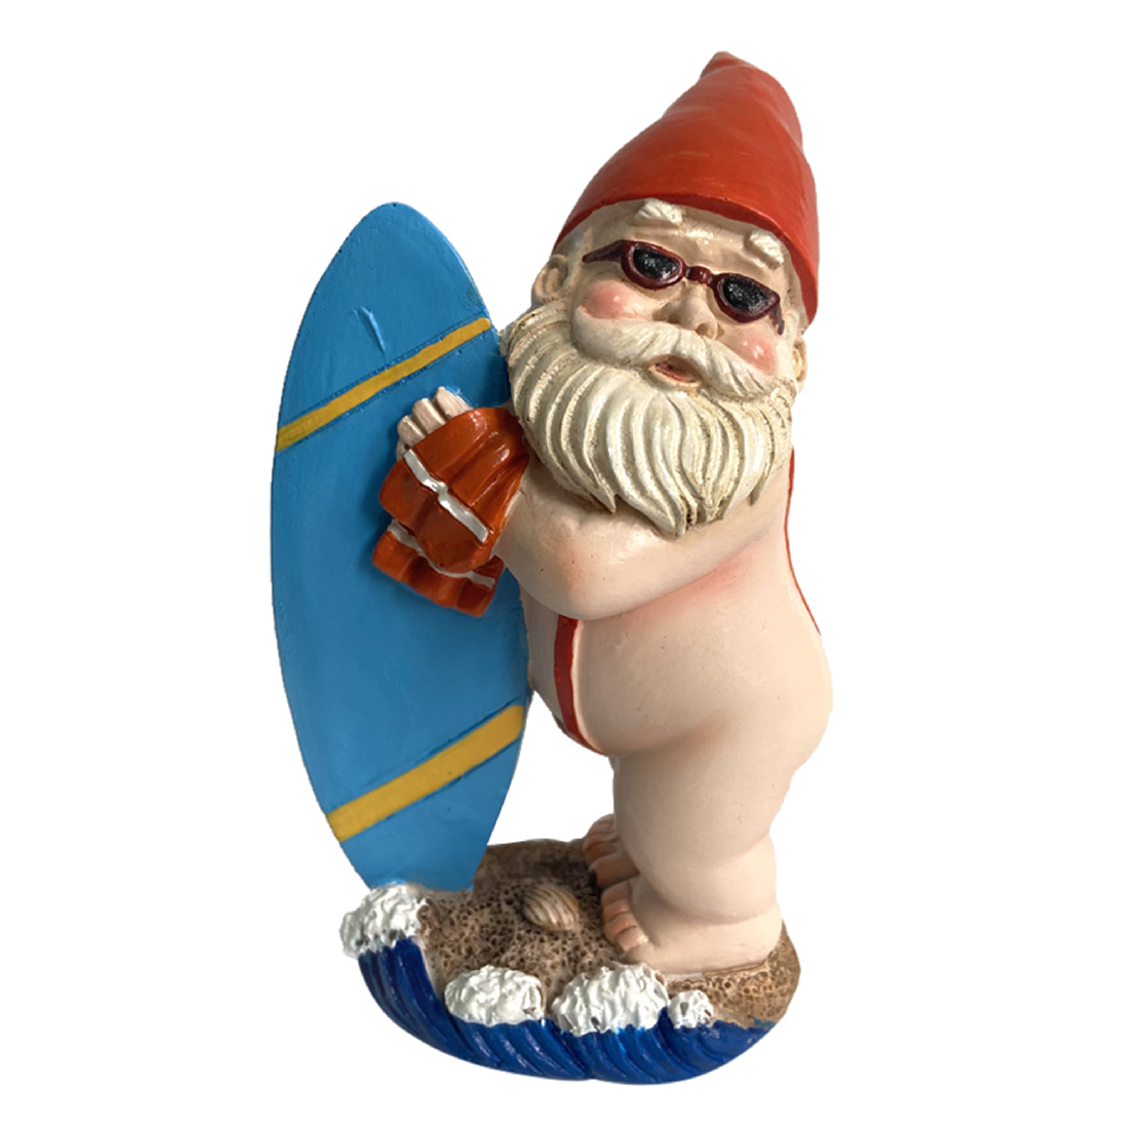 marque generique - Nouveauté Accueil Jardin Gnome Statue, Nu Gobelin Gnome Pelouse Ornements Hauteur 15cm (Debout garçon) - Petite déco d'exterieur